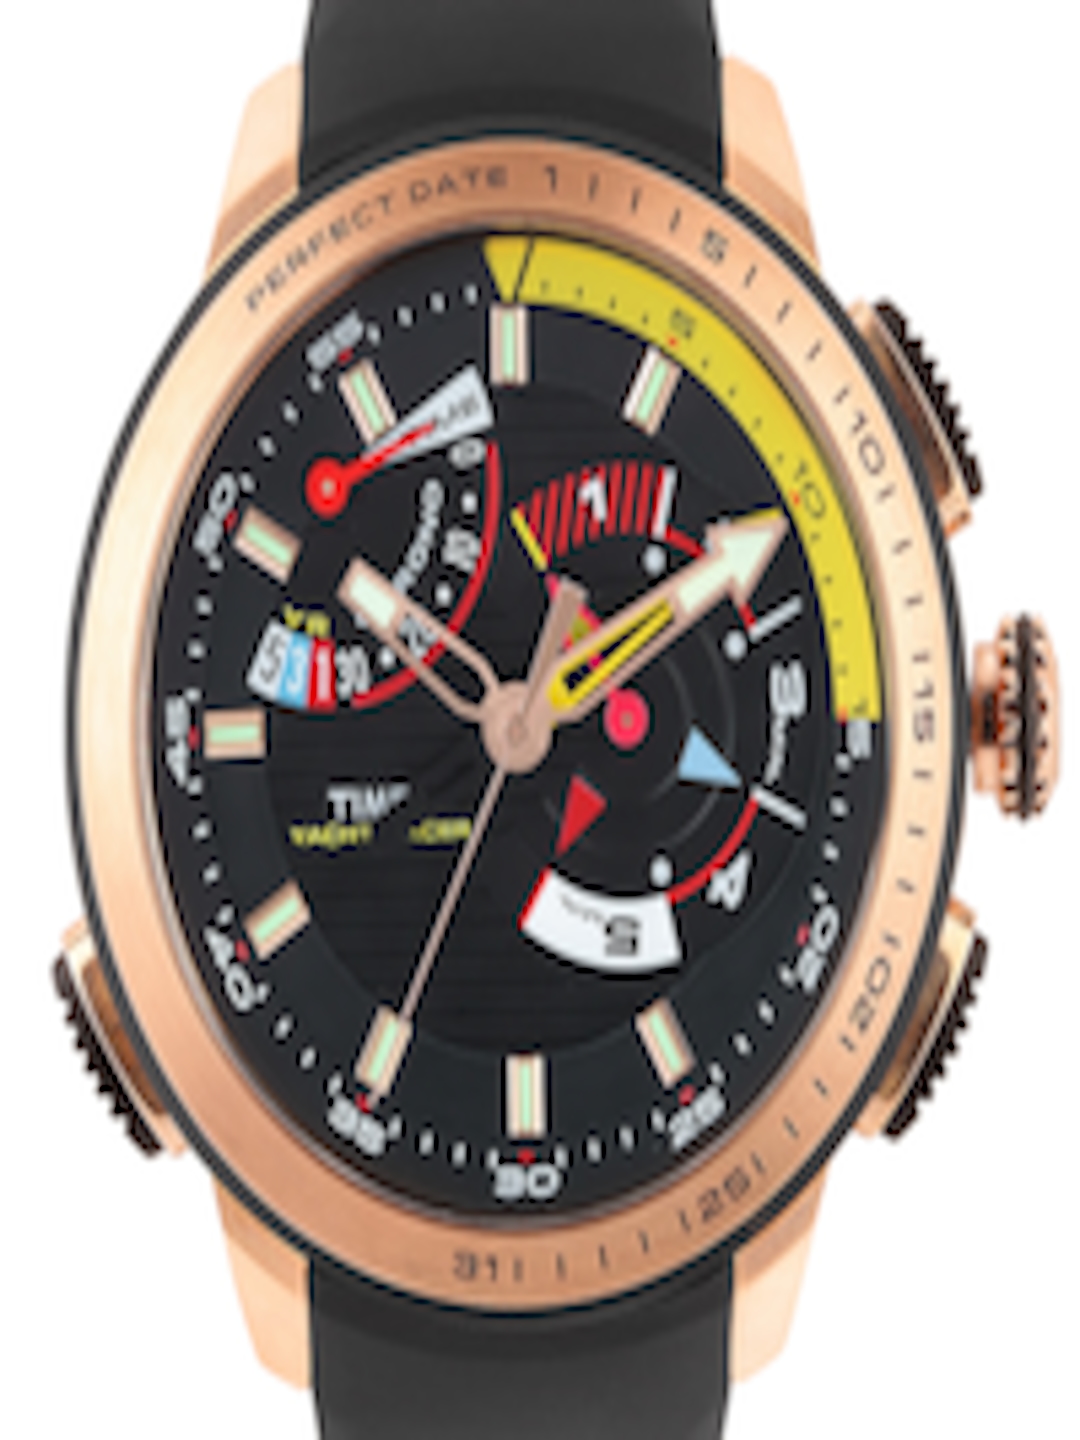 timex intelligent quartz yacht racer watch